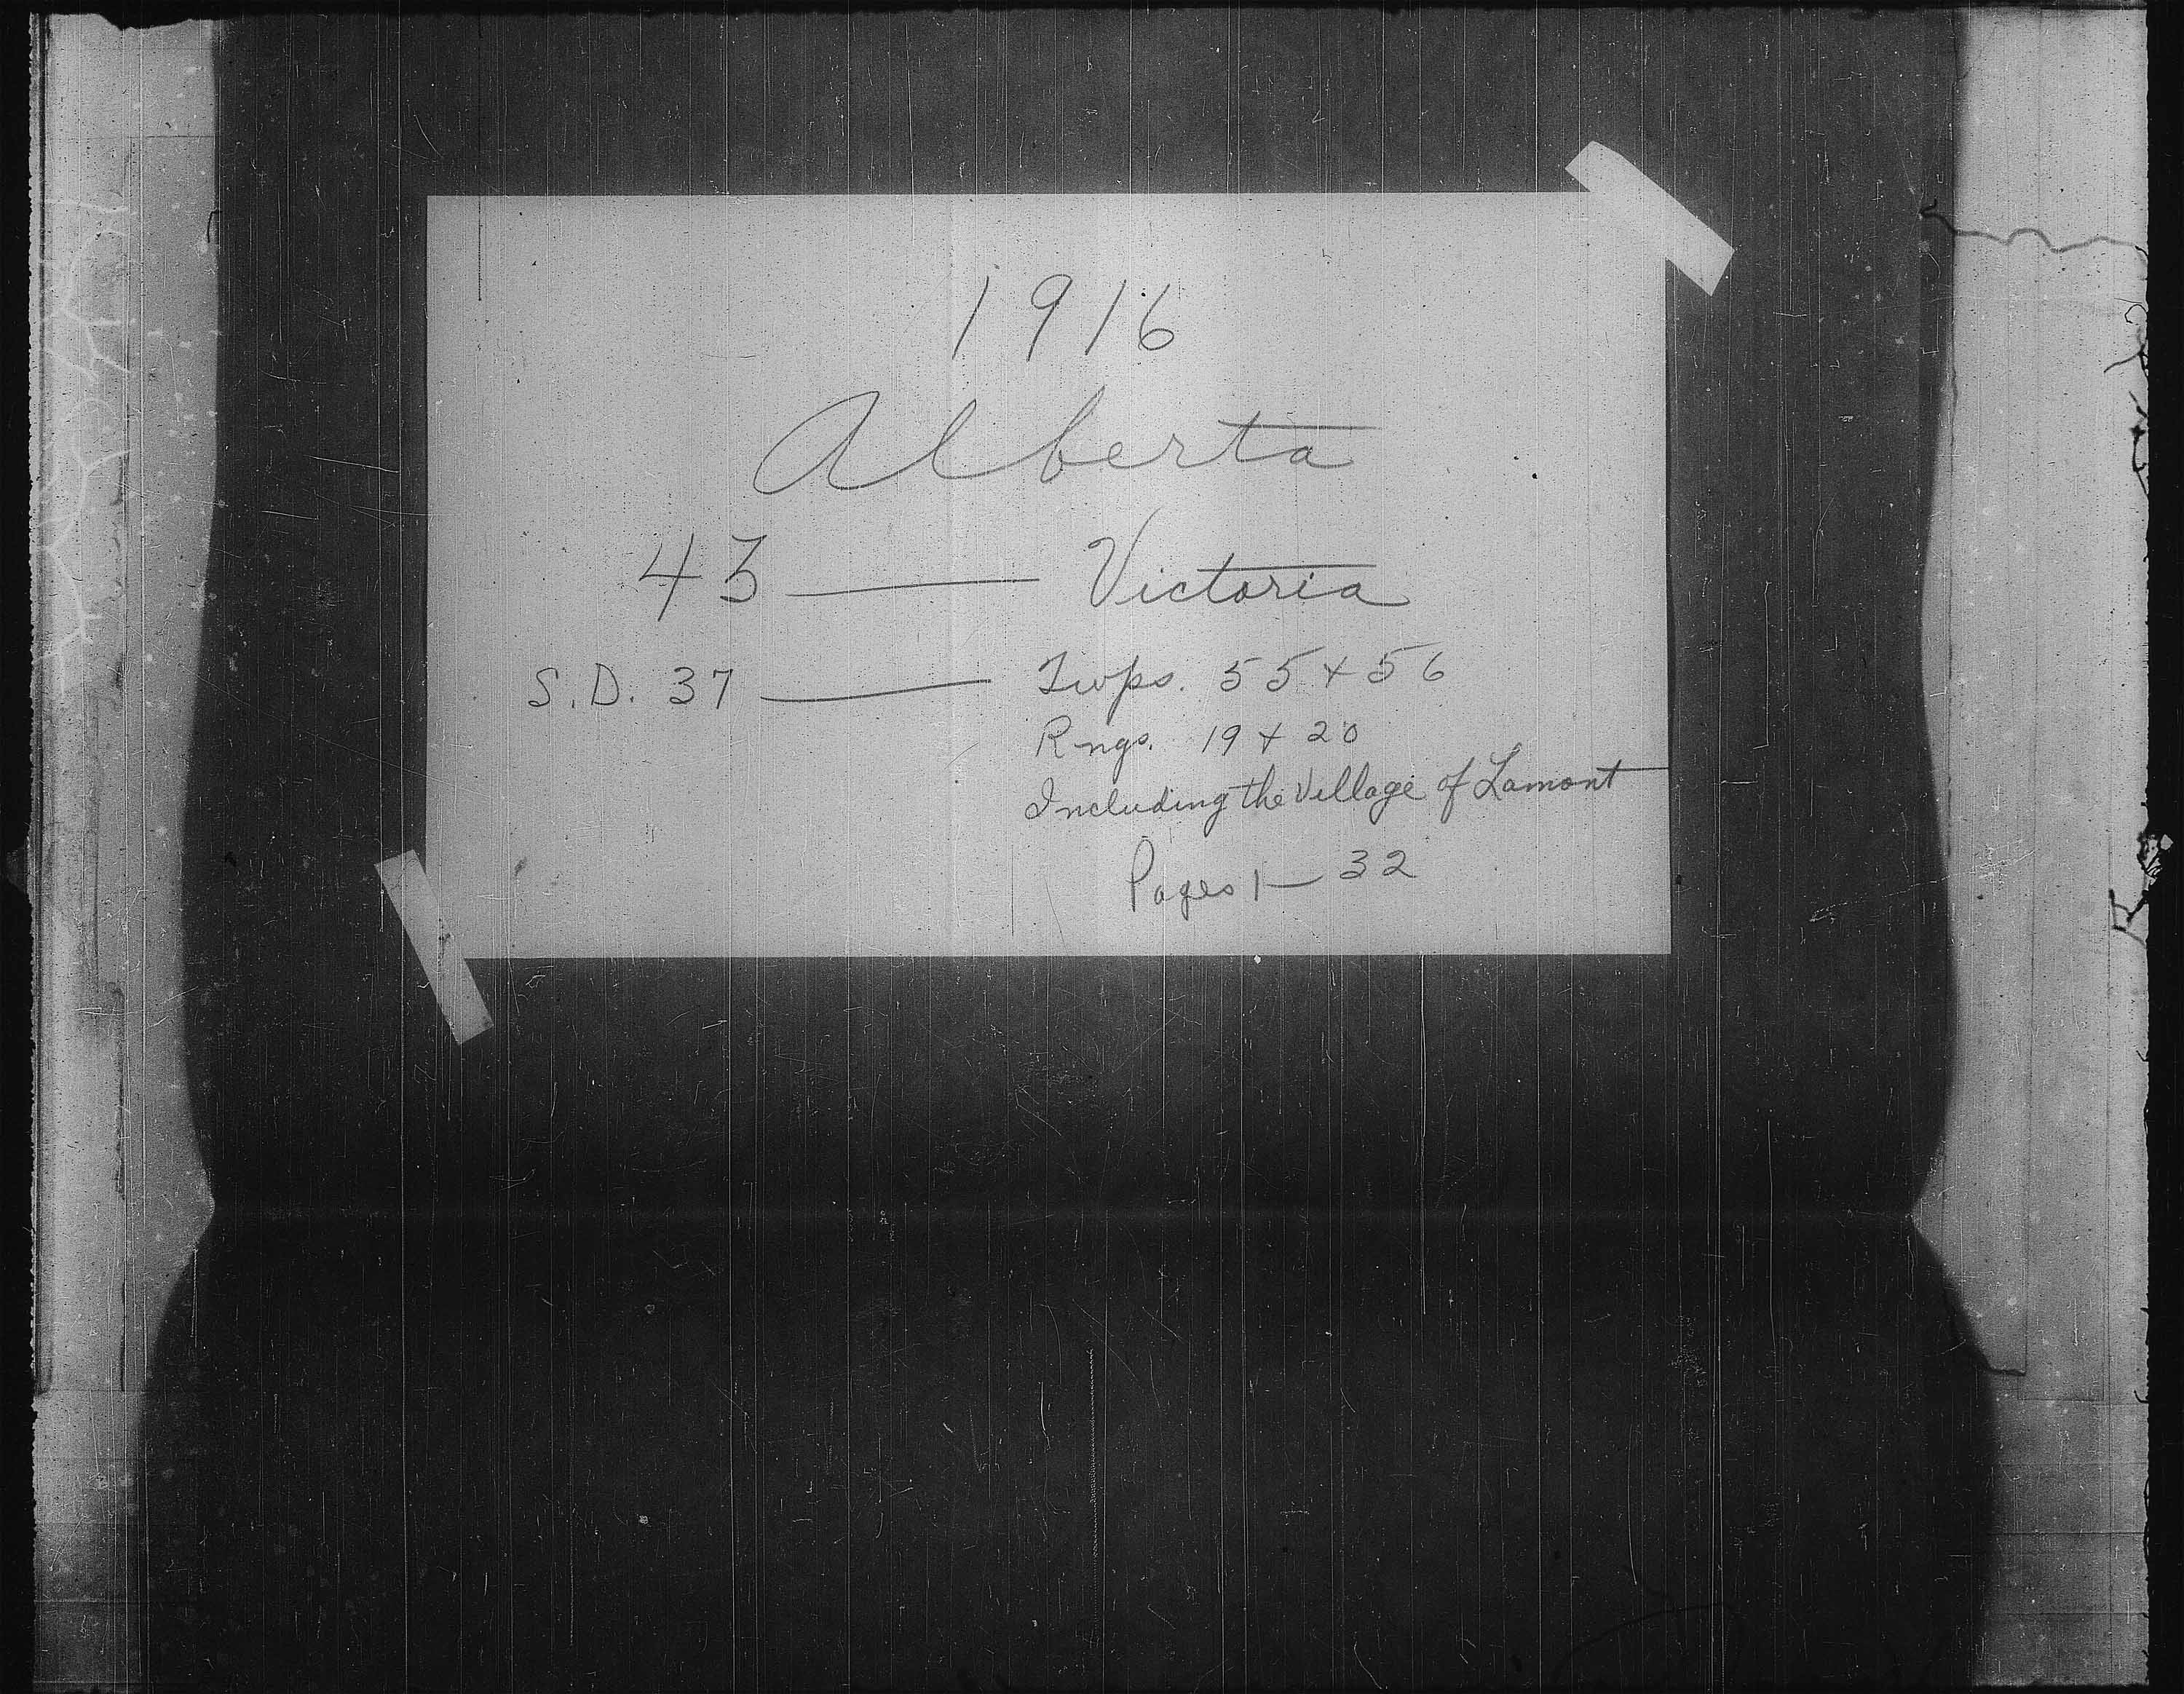 Titre : Recensement des provinces des prairies (1916) - N° d'enregistrement Mikan : 3800575 - Microforme : t-21956